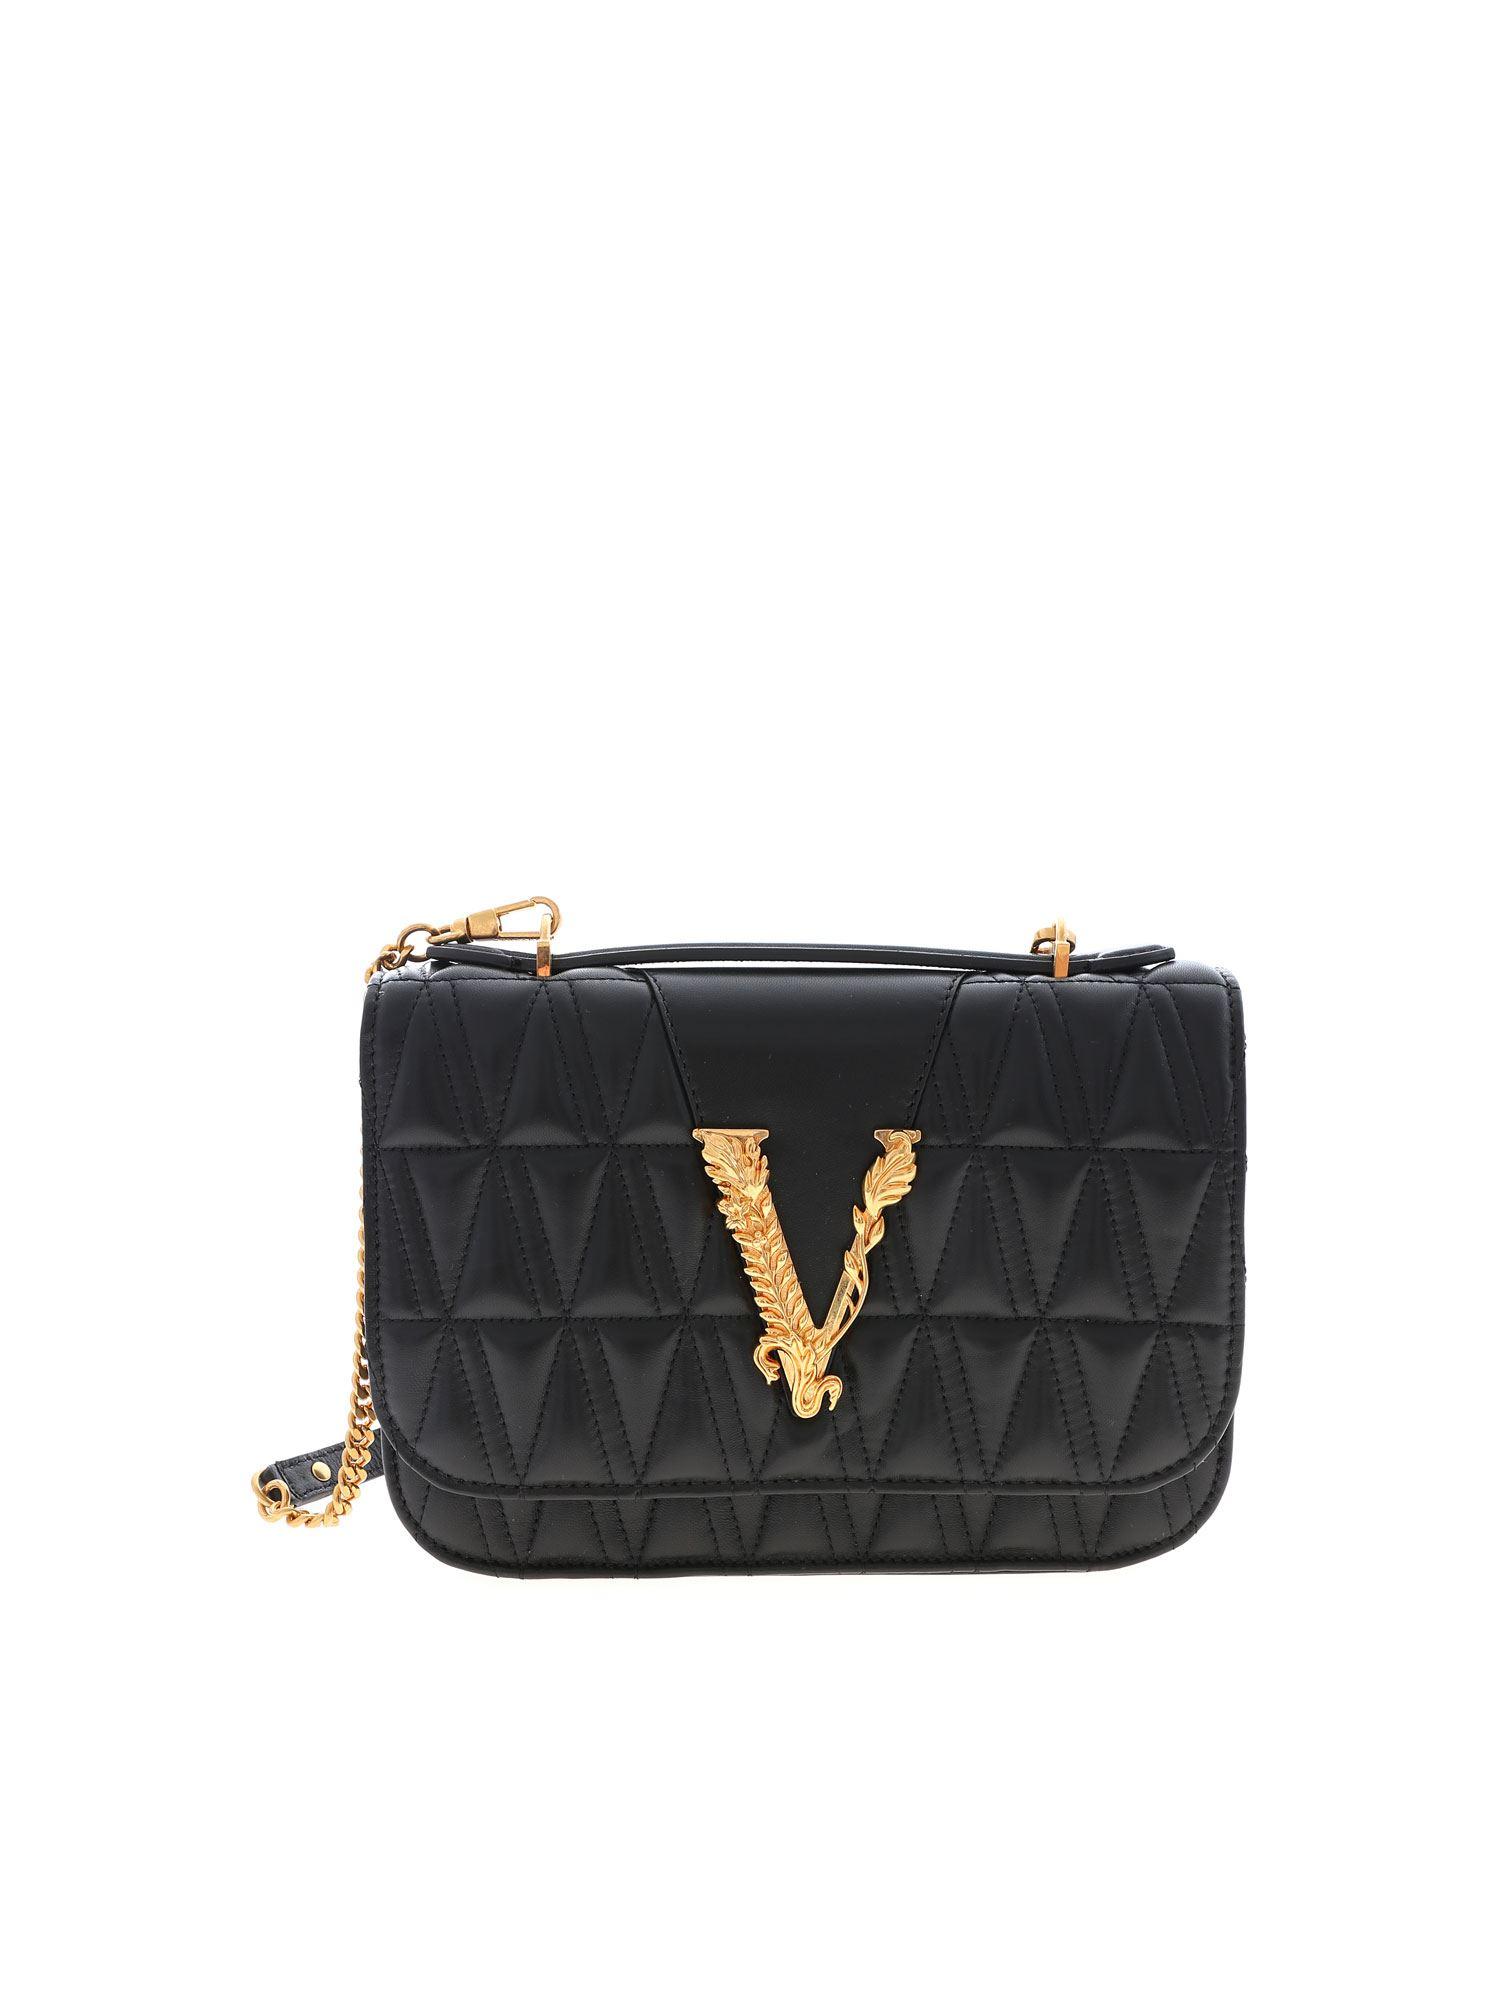 Versace Leather Virtus Shoulder Bag In Black - Lyst